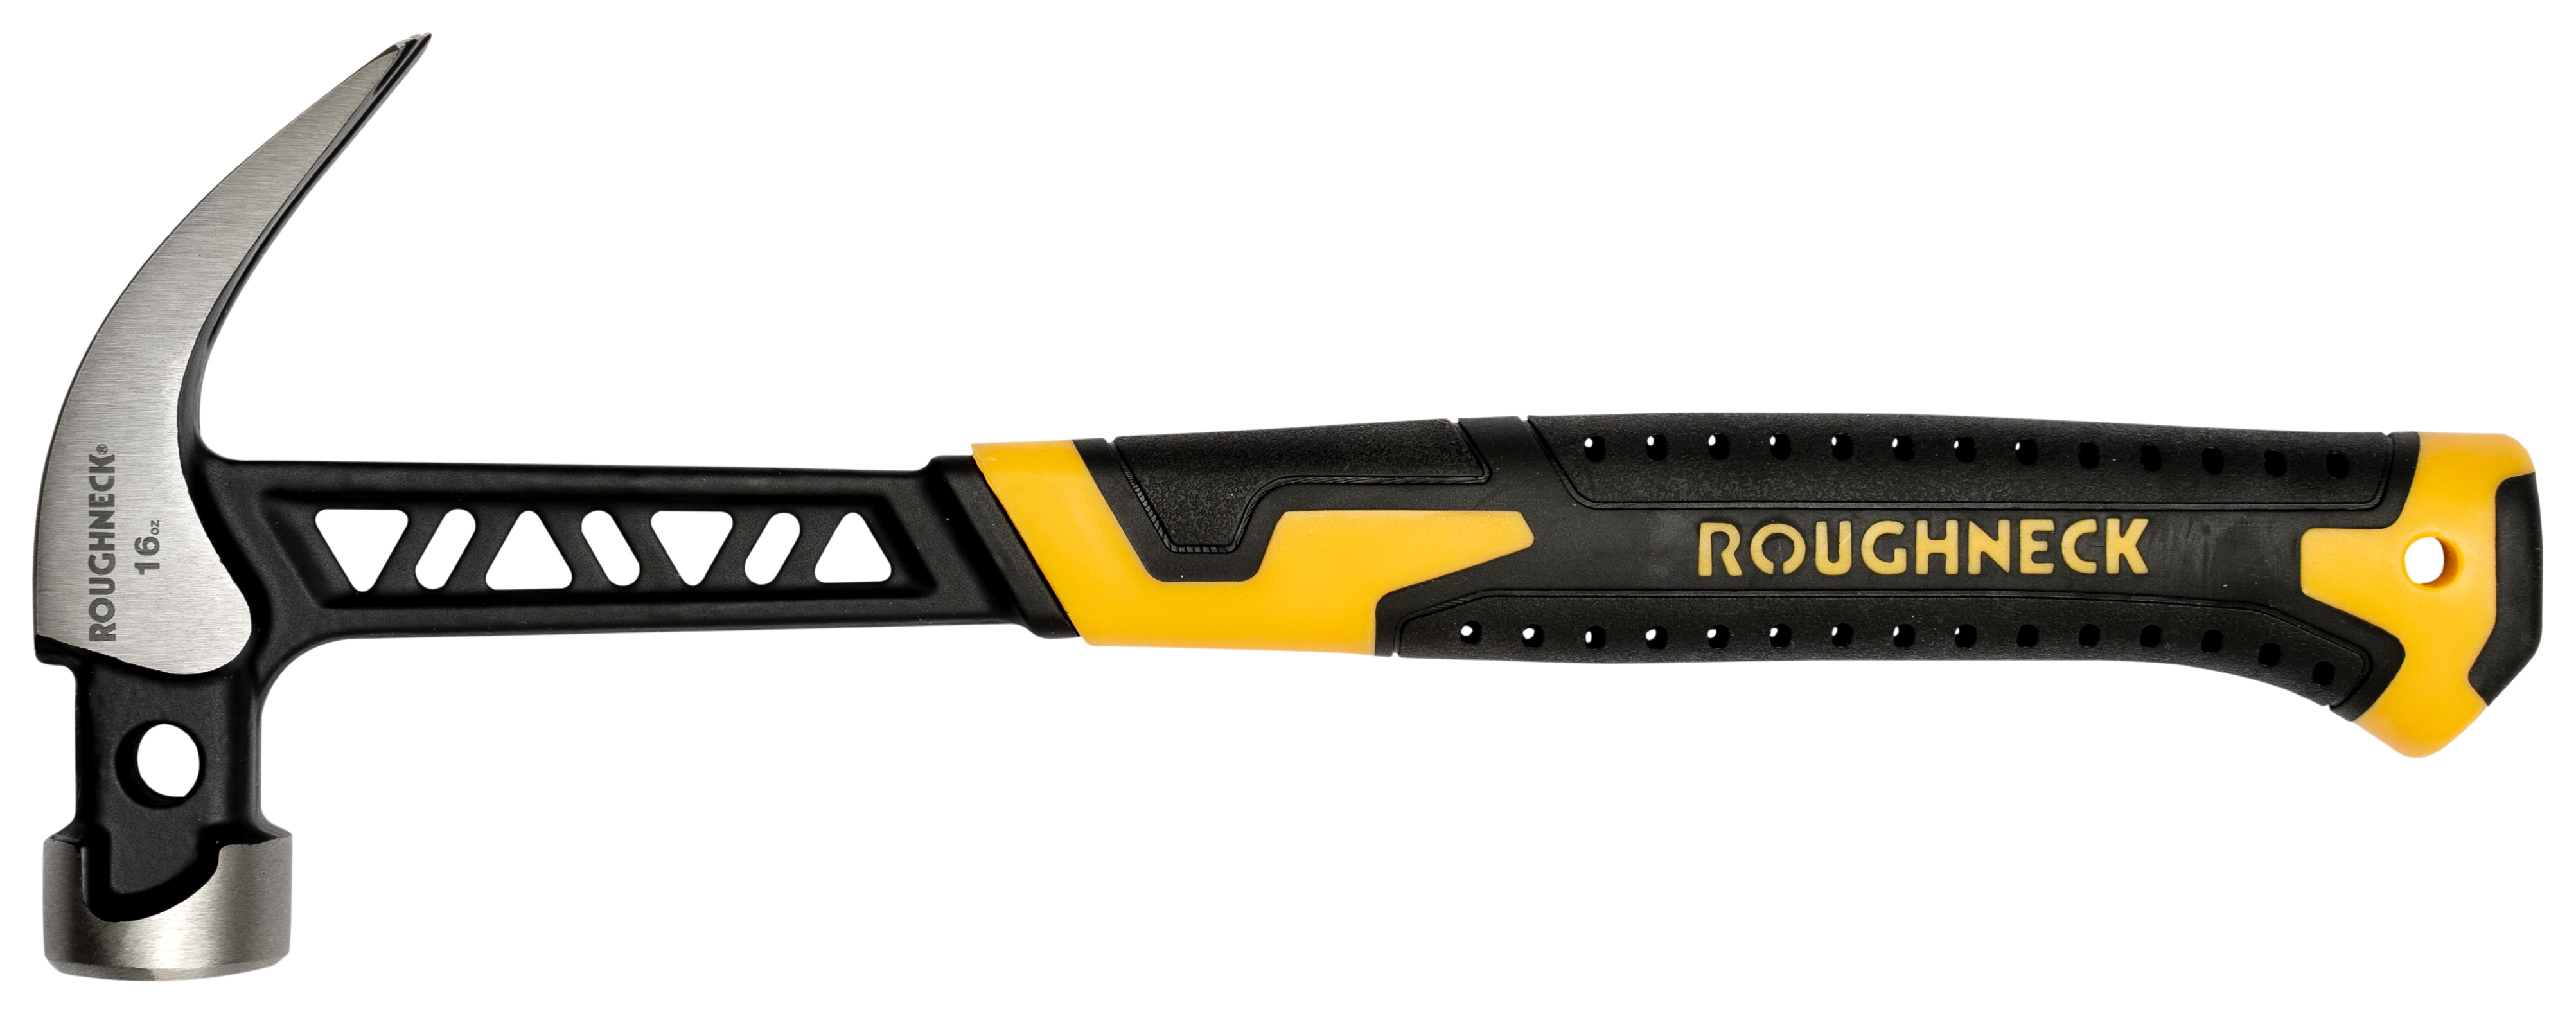 Roughneck Gorilla 11-005 V-Series Claw Hammer - 16oz